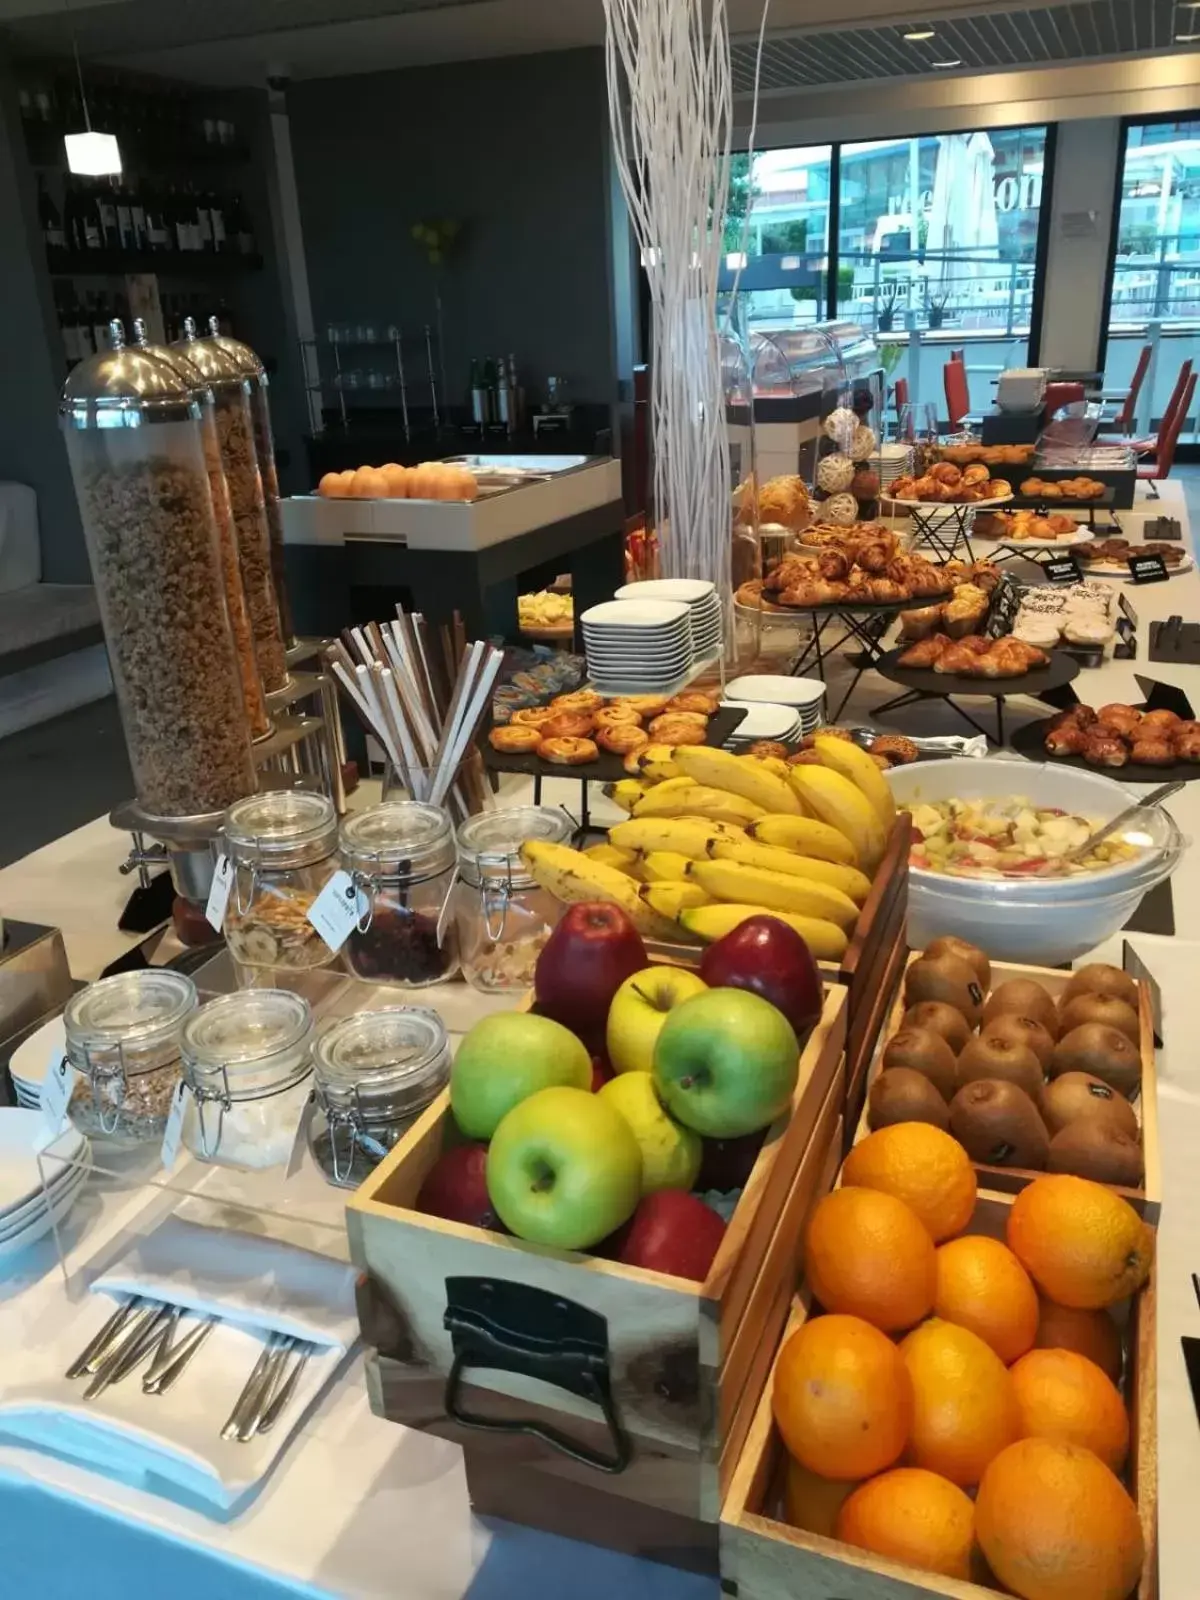 Buffet breakfast in Best Western Hotel Rome Airport